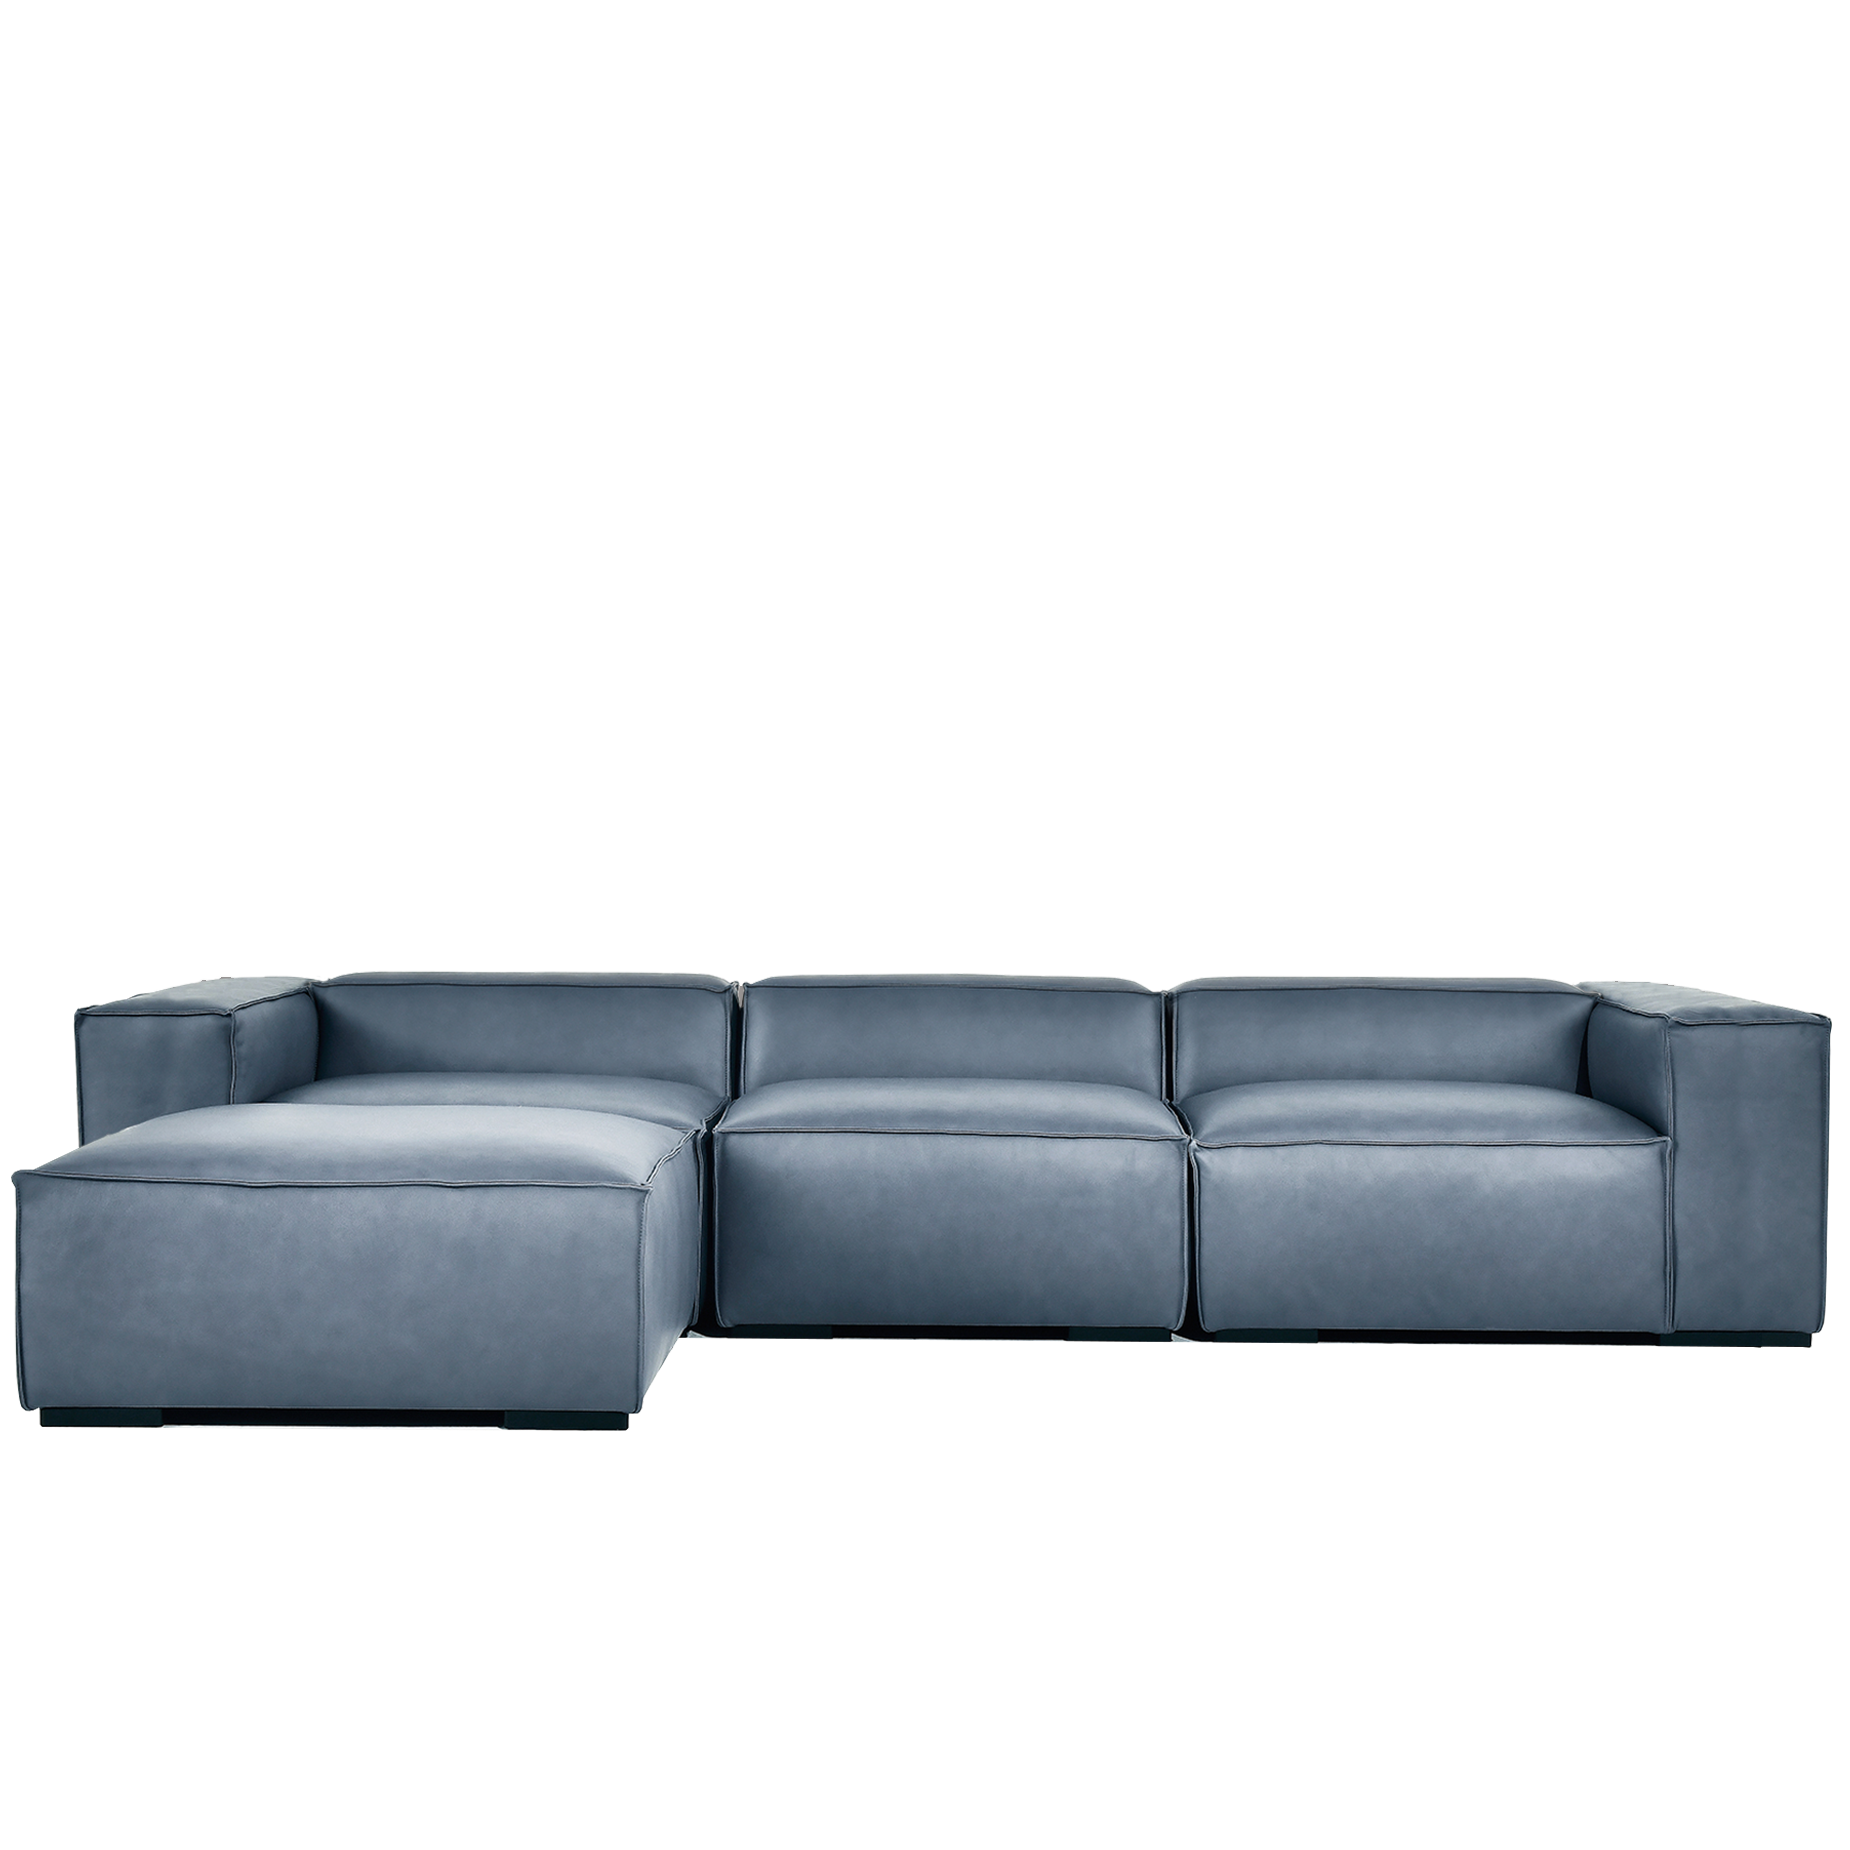 (주)도이치 DOICH ®    PEN16 modular sofa+stool 도이치 펜16 4인 모듈소파+스툴  [4주 주문제작]